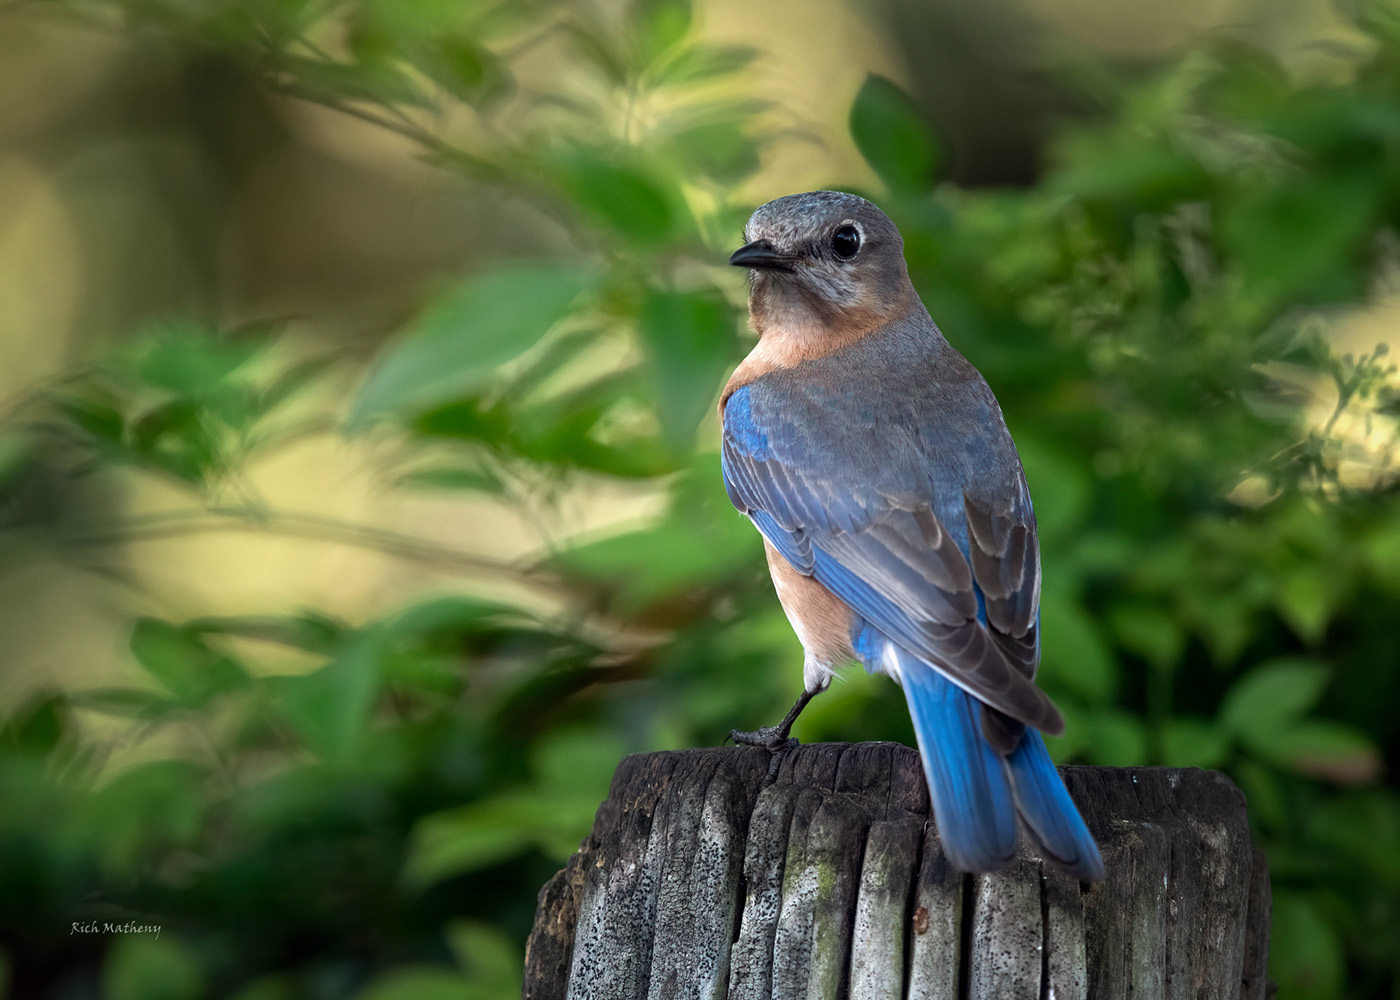 Female Blue Bird by Richard Matheny